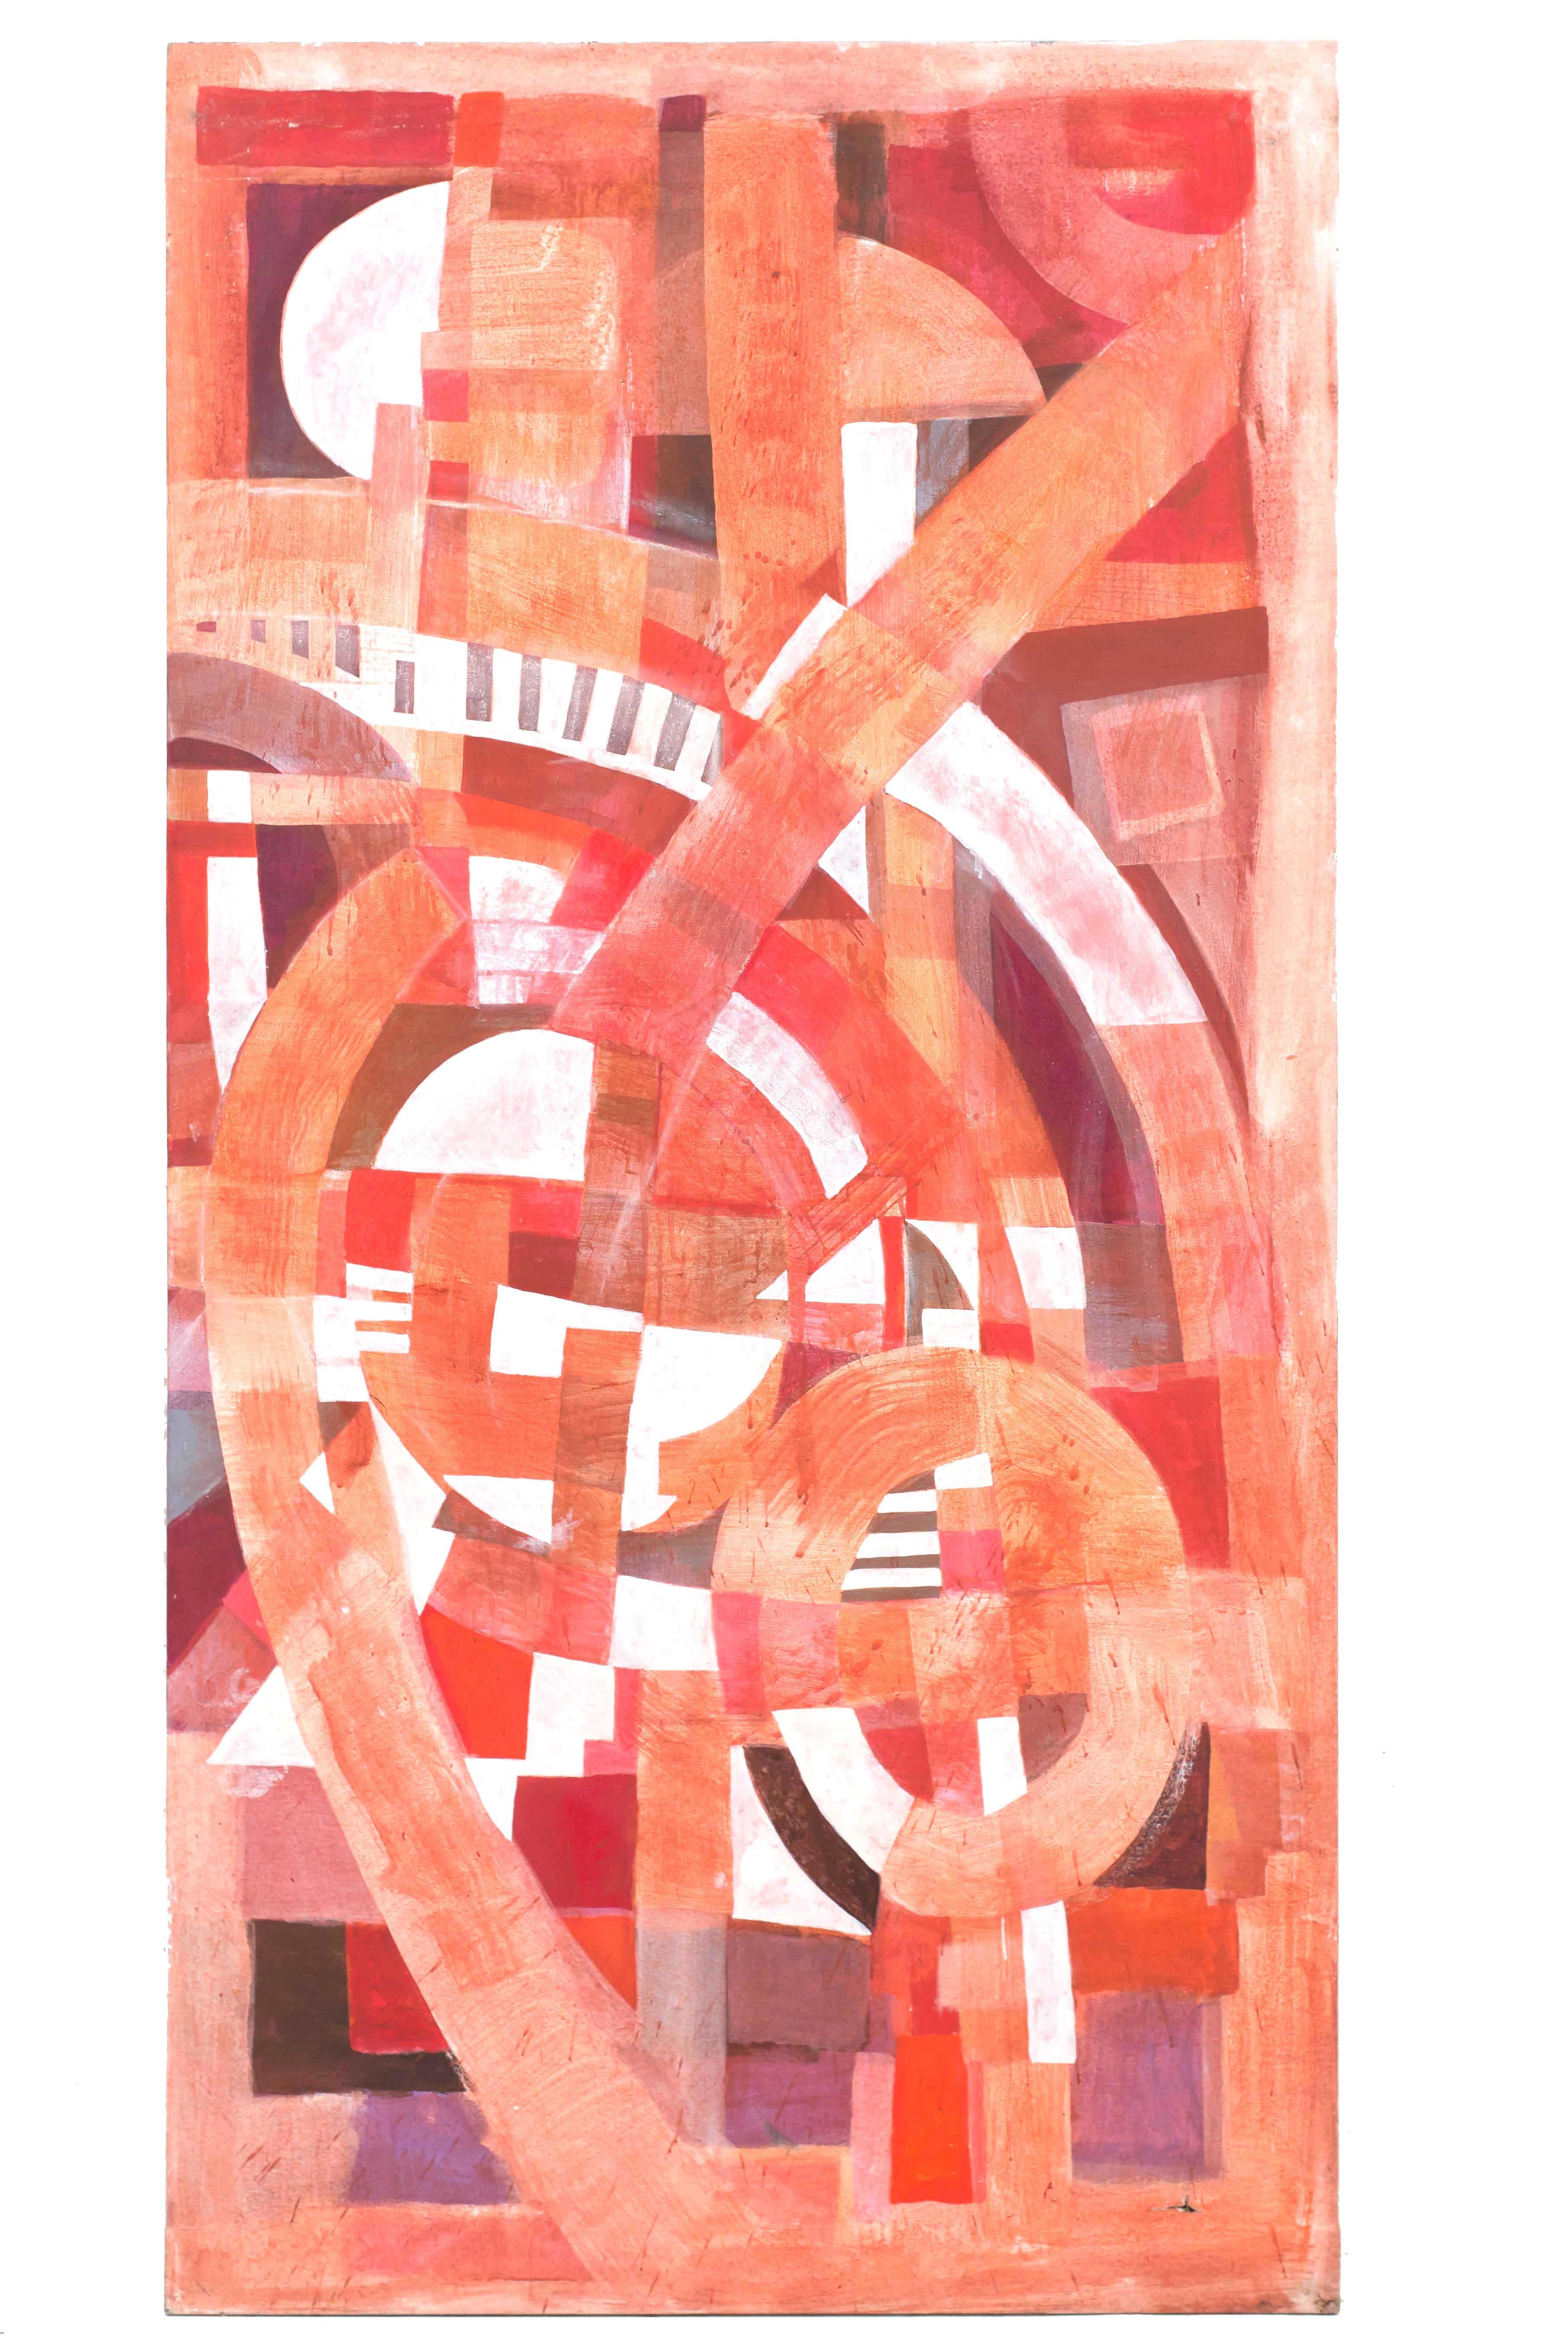 Ensemble de 3 tableaux abstraits contemporains (triptyque) à la gouache sur toile rectangulaire dans les tons de rose, rouge et blanc. (TOM JOHN, 2010)
